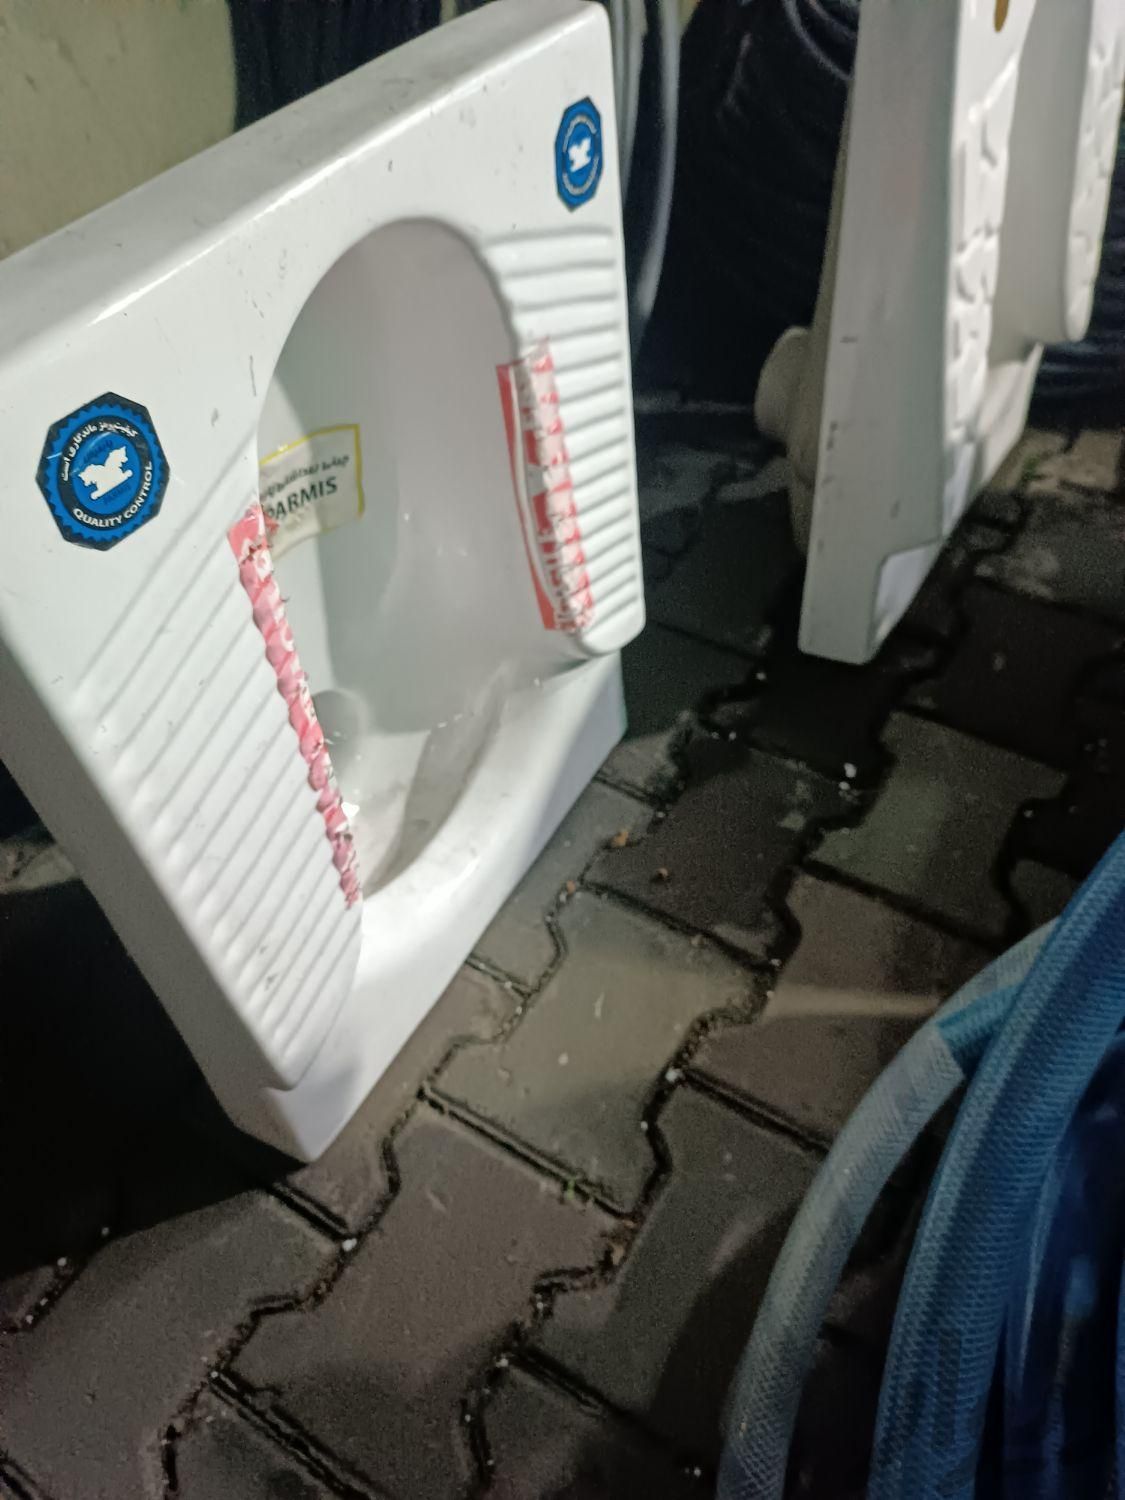 سنگ توالت ایرانی گود با جا پای بلند طبی ریم لس|لوازم سرویس بهداشتی|گرگان, |دیوار